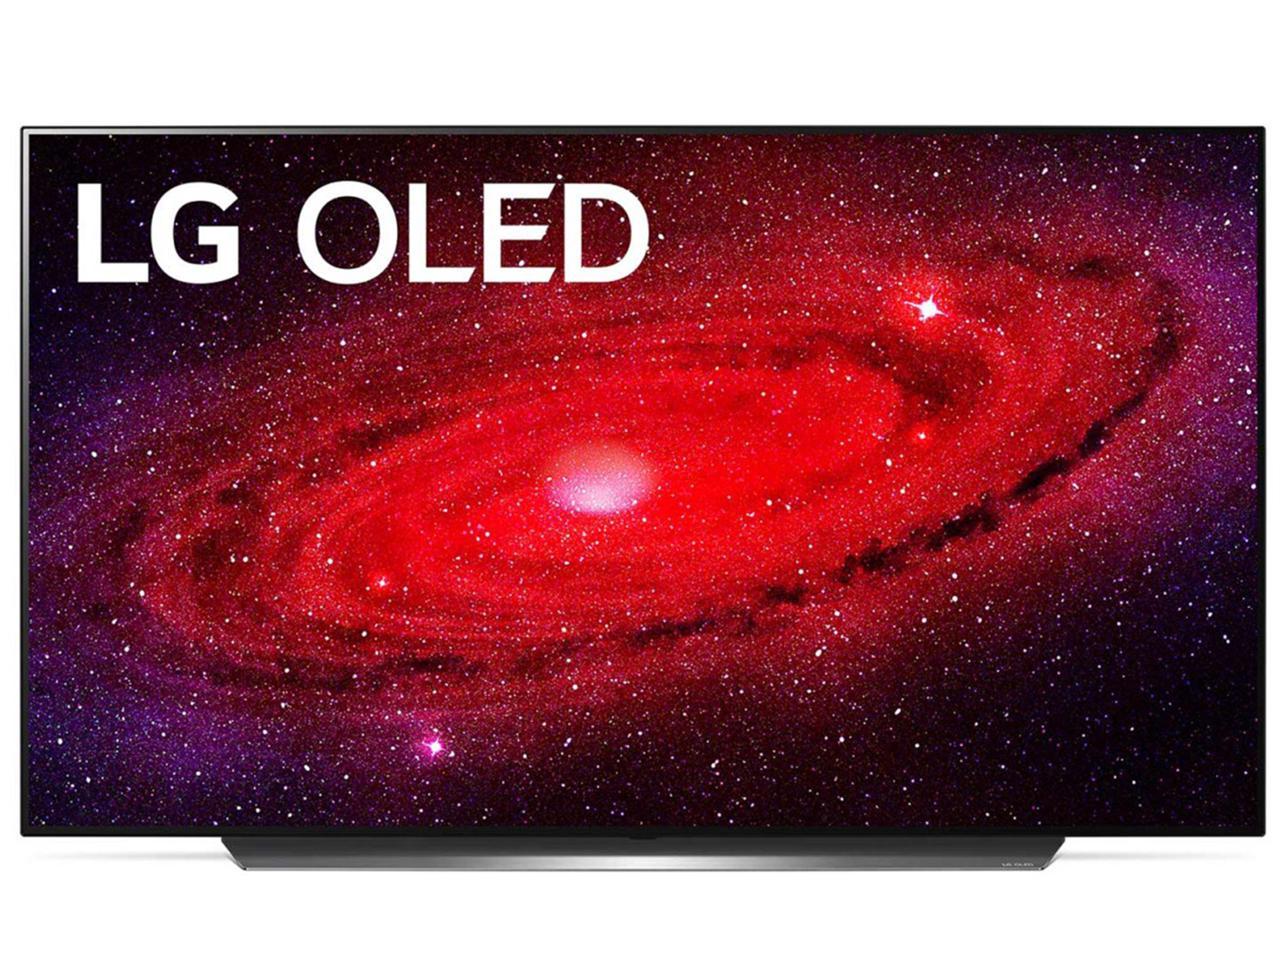 65" LG OLED65CXPUA OLED TV + $200GC @Newegg $1997